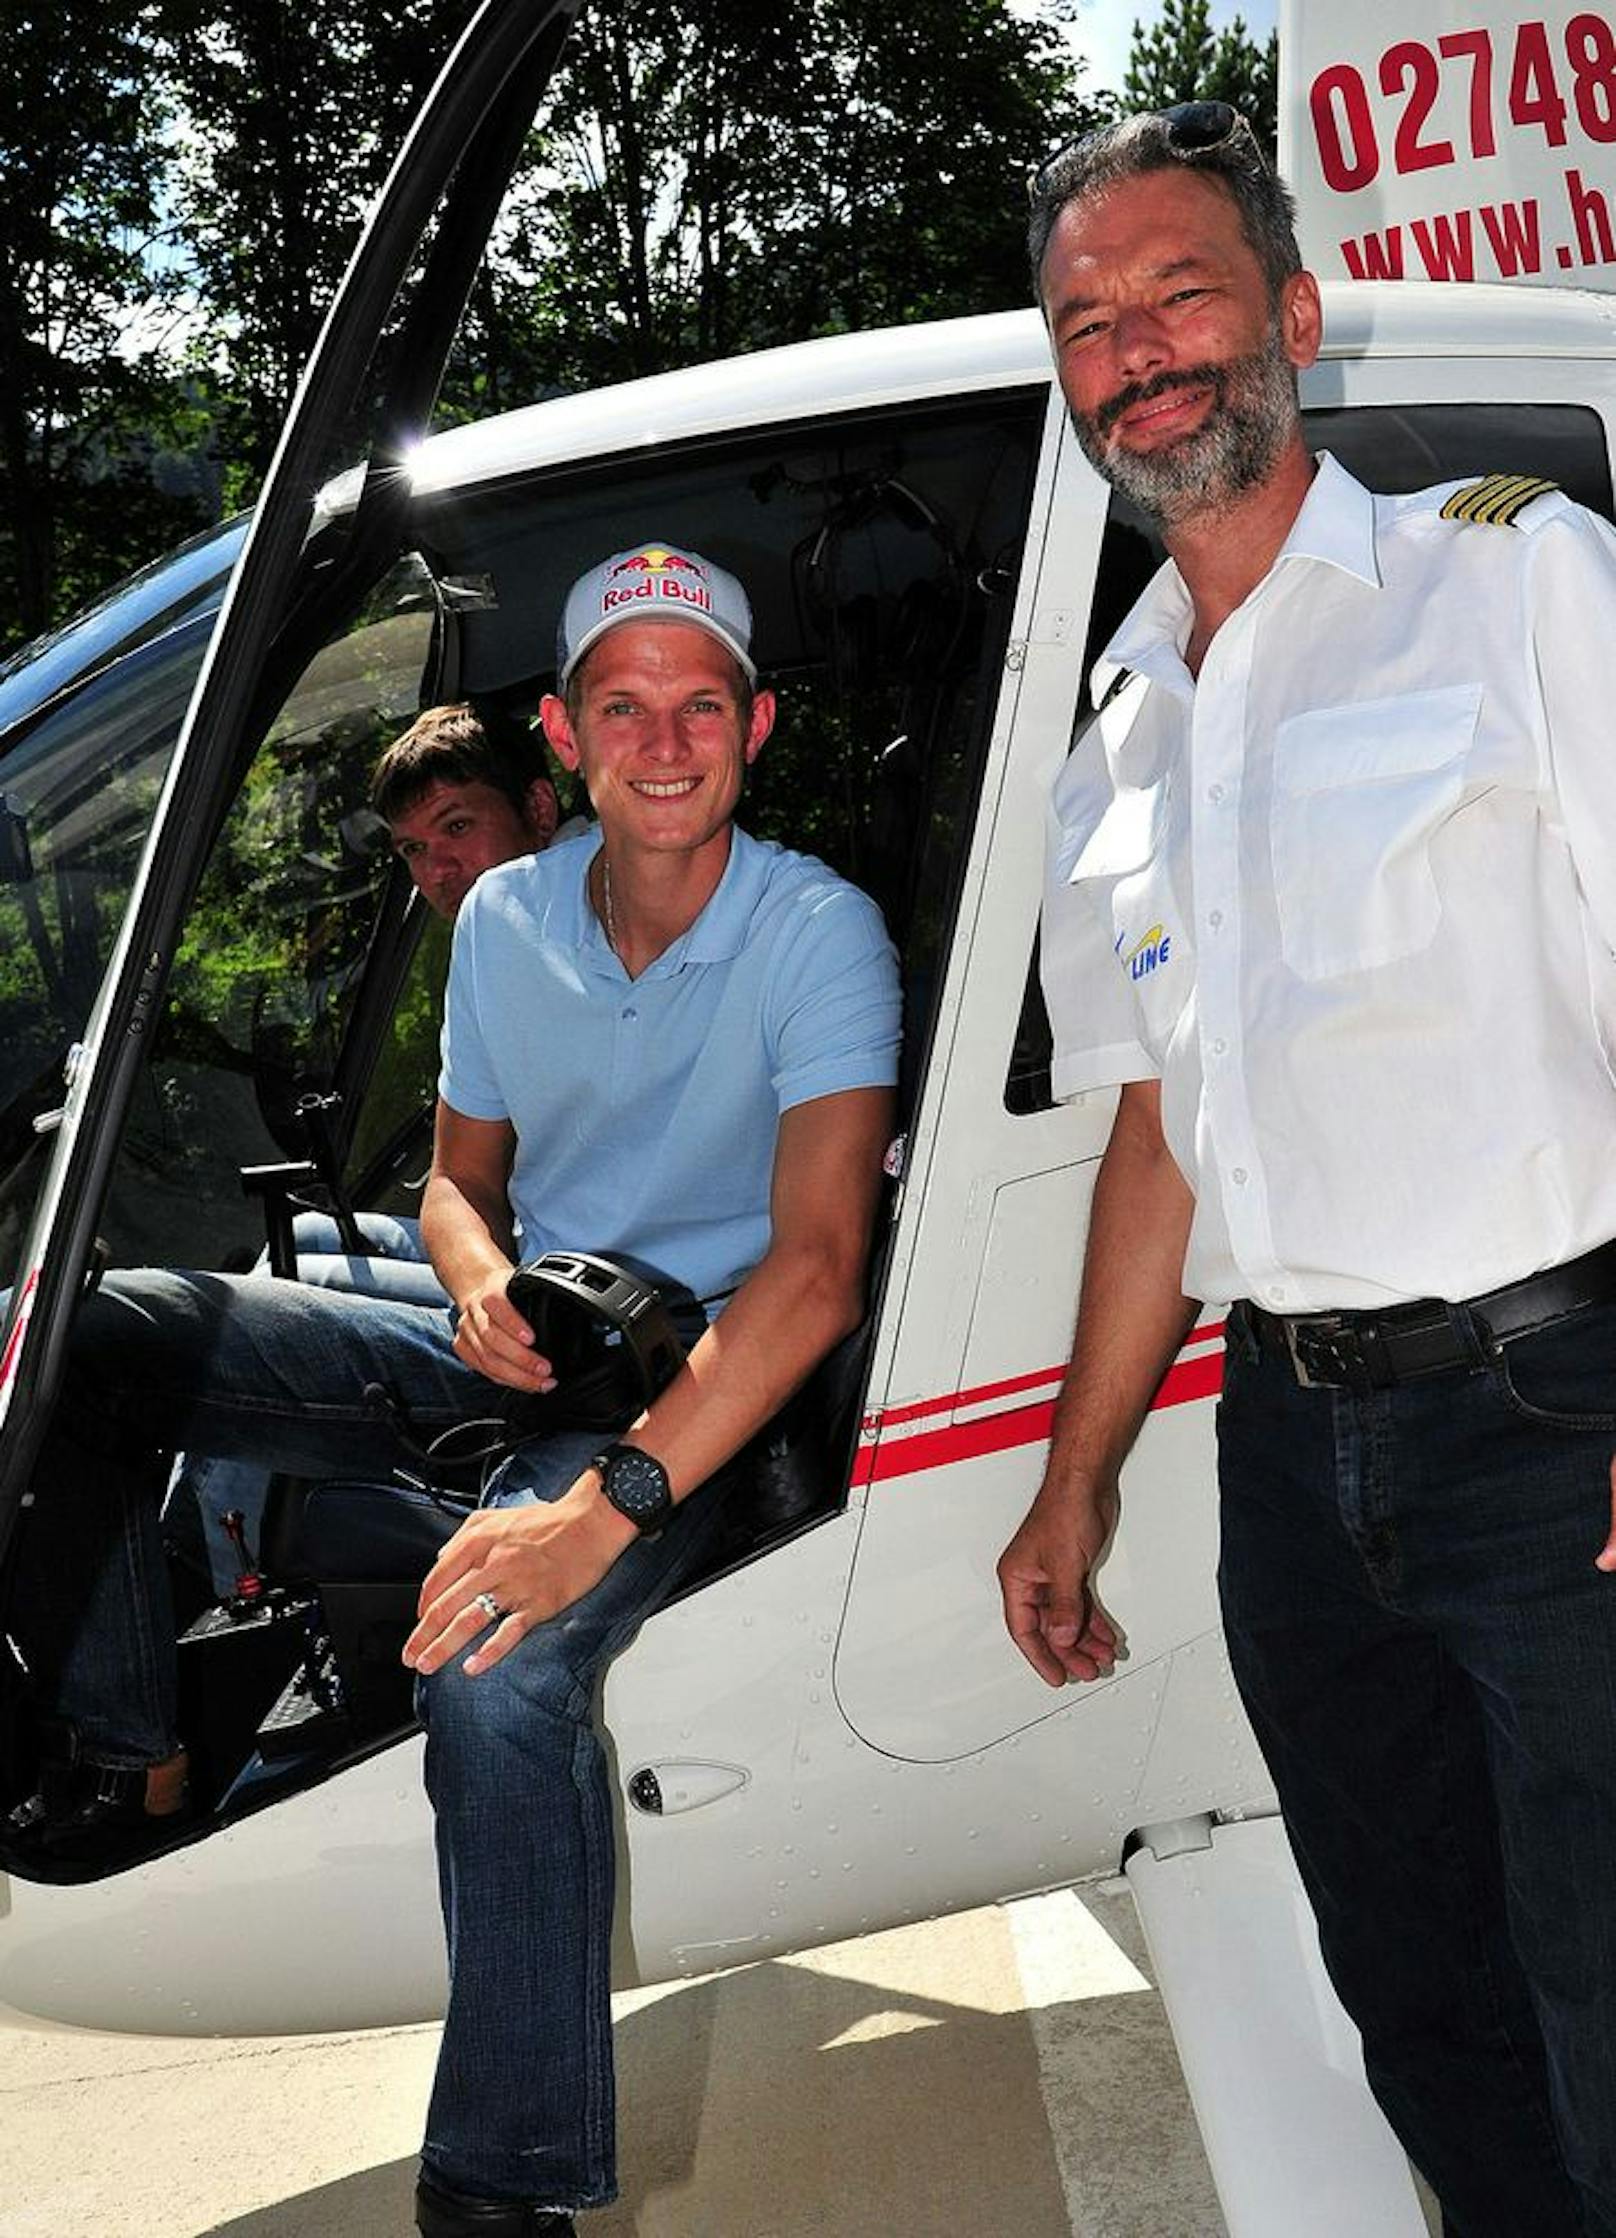 ÖSV-Adler Thomas Morgenstern bleibt auch nach der Karriere ein Überflieger. Er hat jetzt auch Pilotenschein und mit Ex-ÖFB-Teamspieler Martin Hinteregger gemeinsam eine Helikopterfirma.